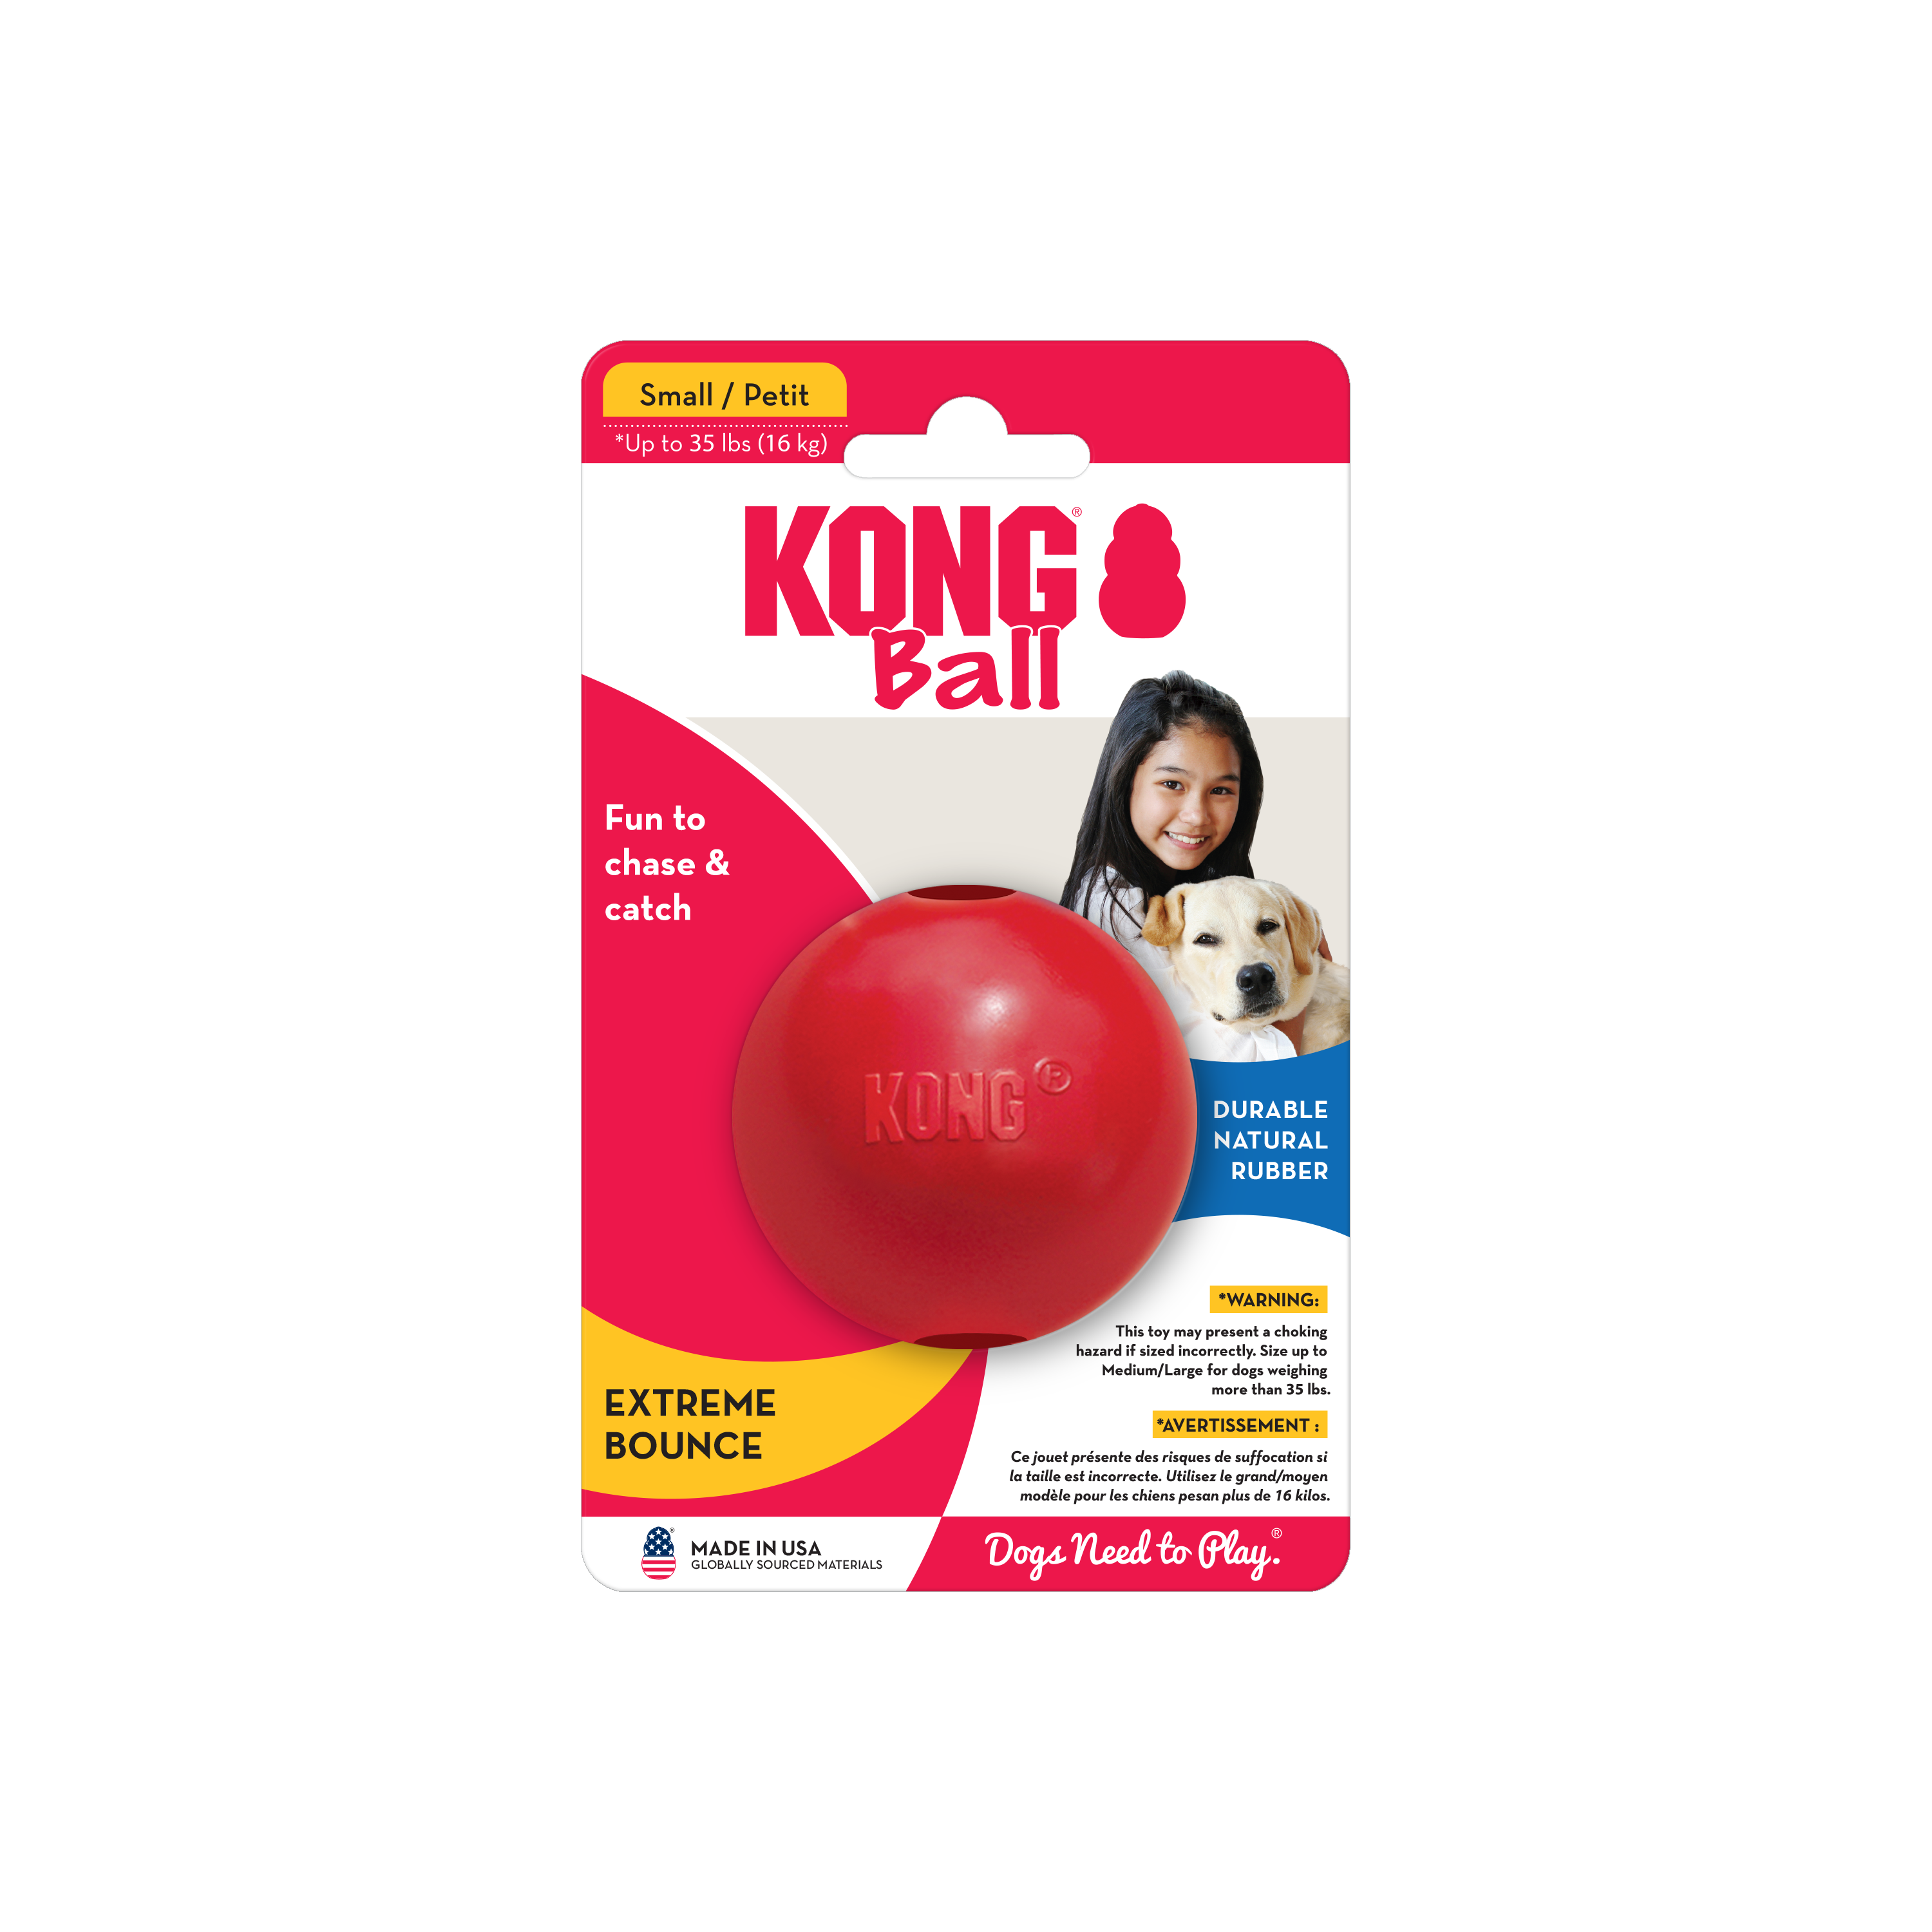 KONG Ball mit Loch onpack Produktbild